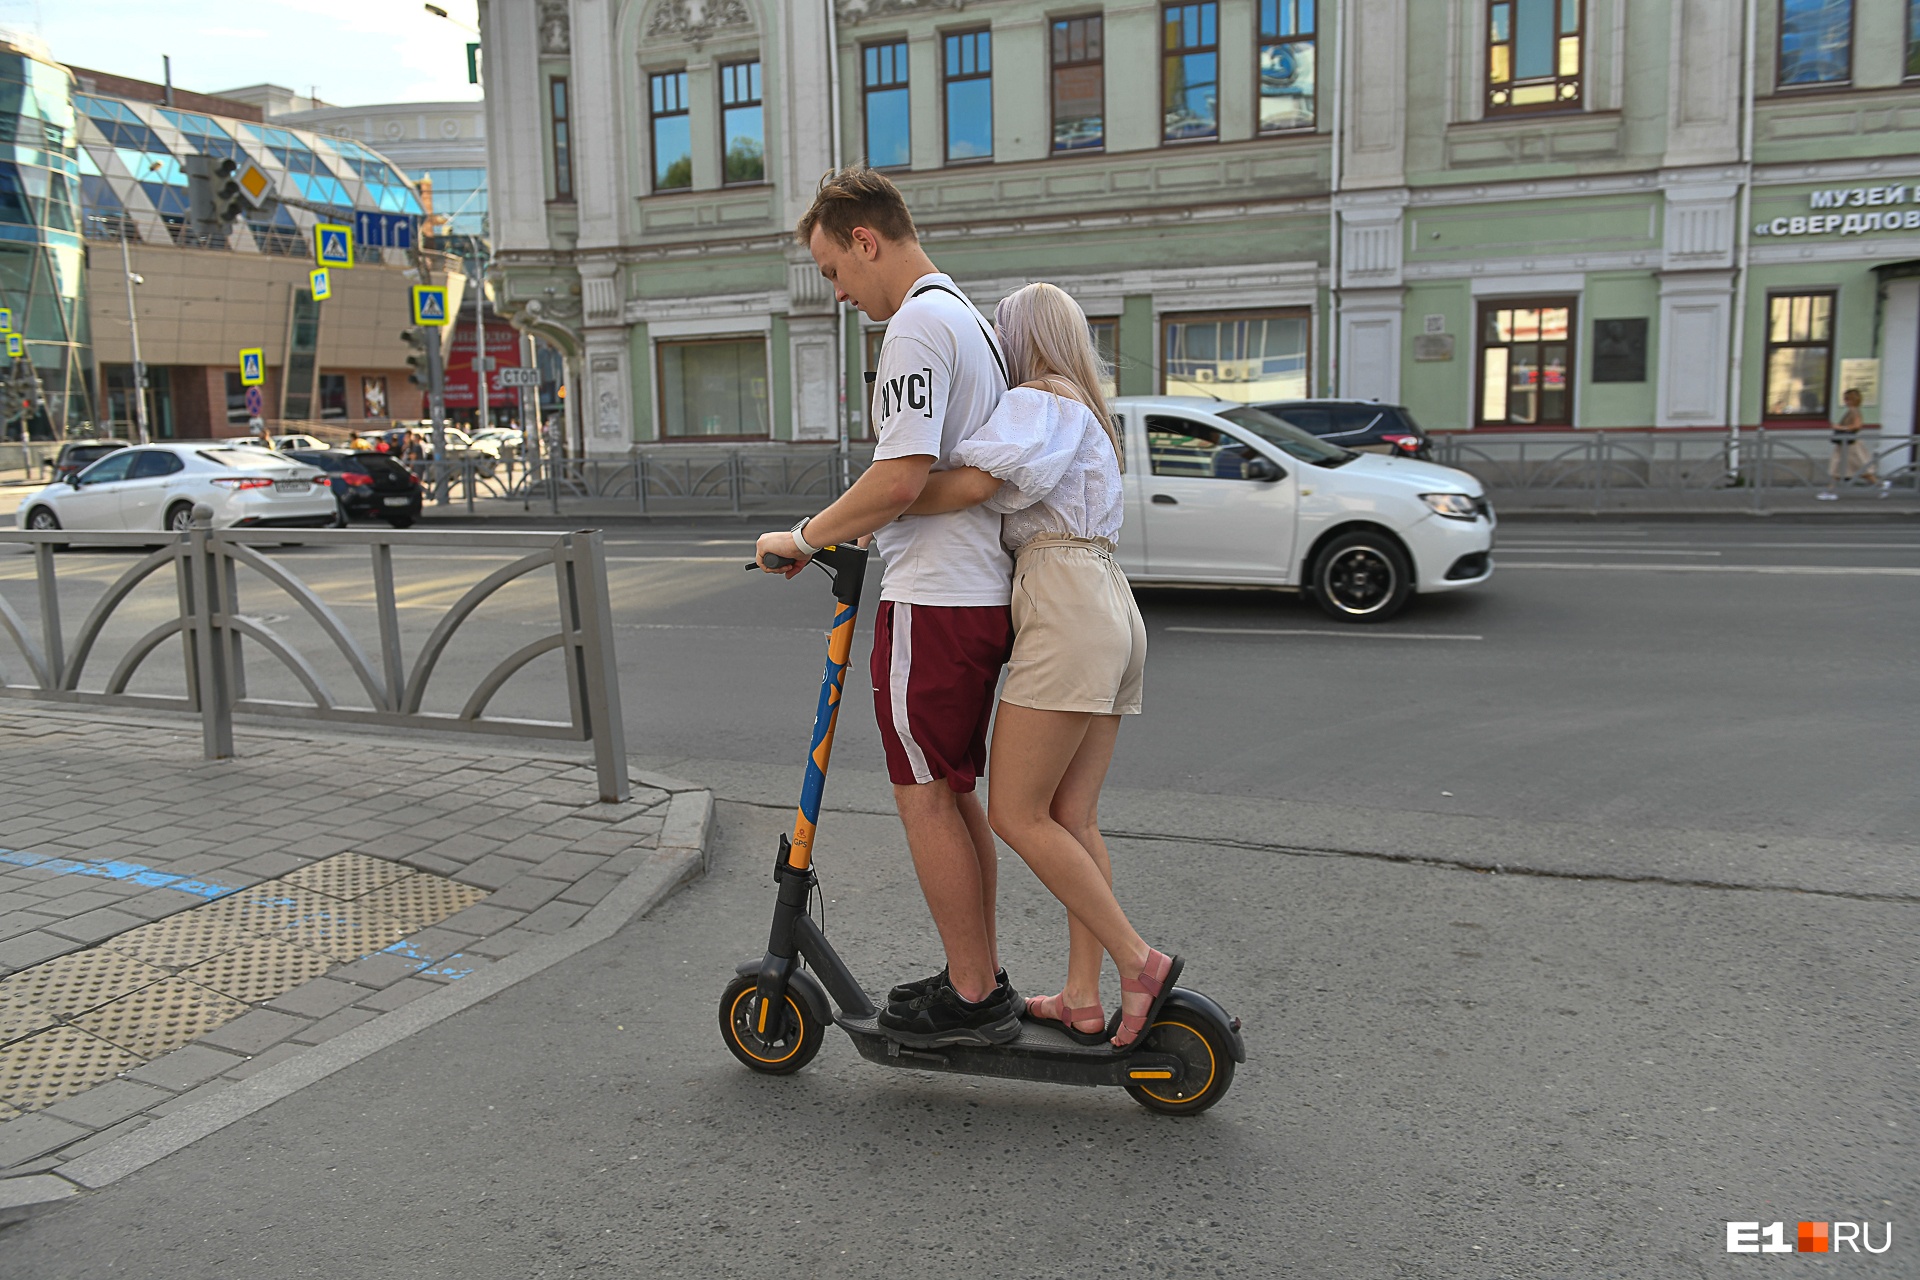 Пешеходам придется потесниться: на тротуарах в Екатеринбурге появится разметка для самокатов